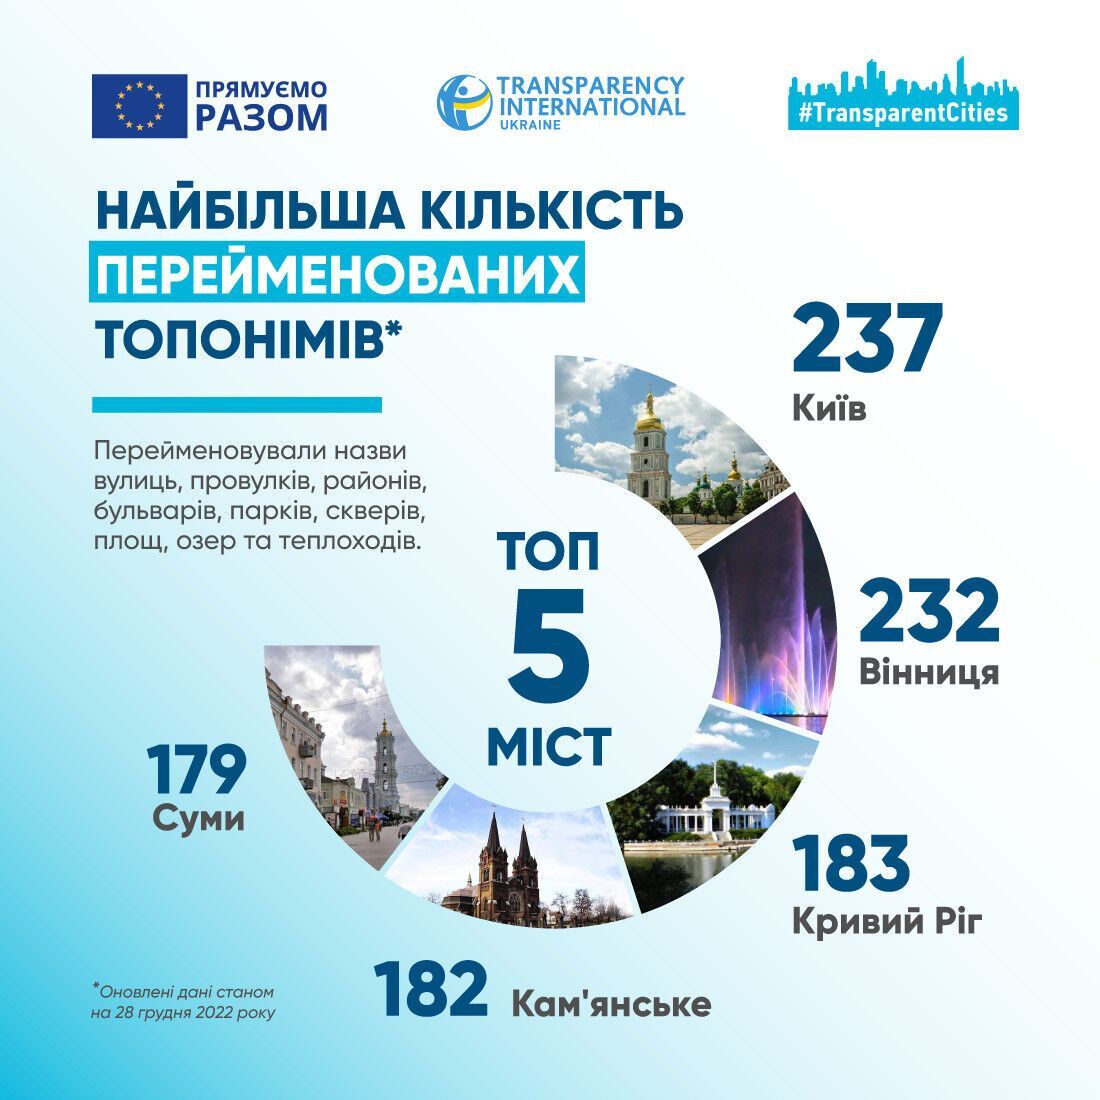 Киев возглавил рейтинг украинских городов по количеству переименованных улиц в 2022 году